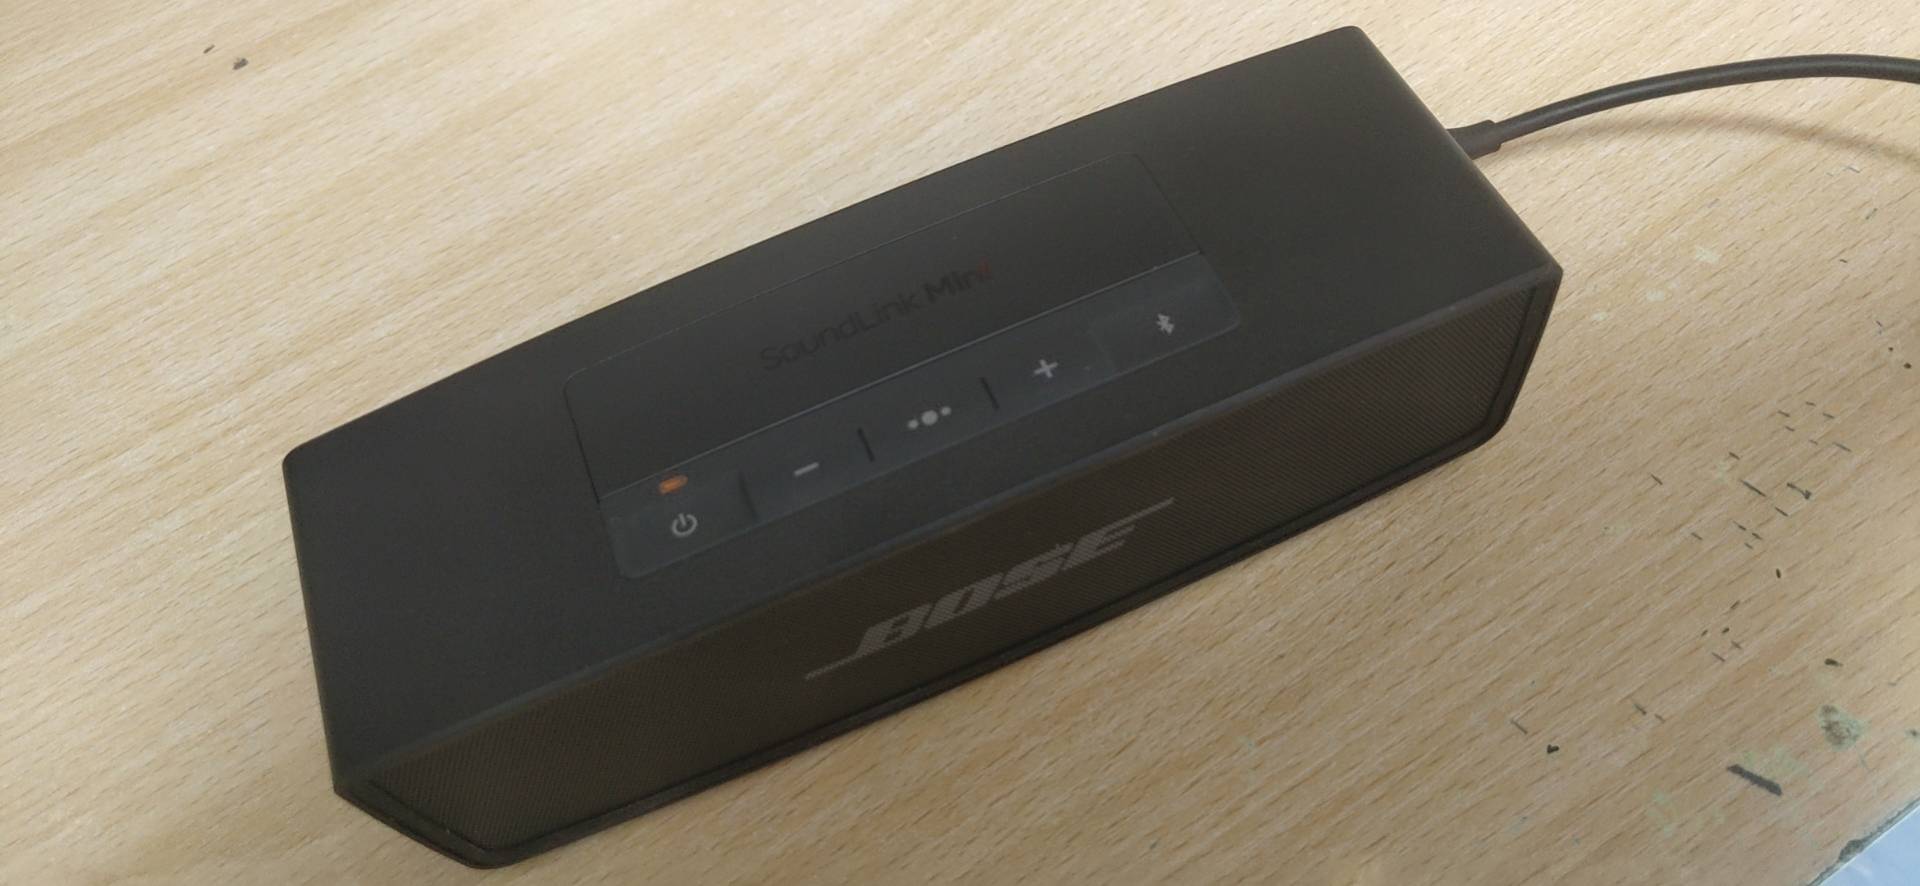 Bose音箱 SoundLinkmini 特别版蓝牙博士mini2 便携低音炮电脑家用 无线蓝牙链接 长效续航晒单图